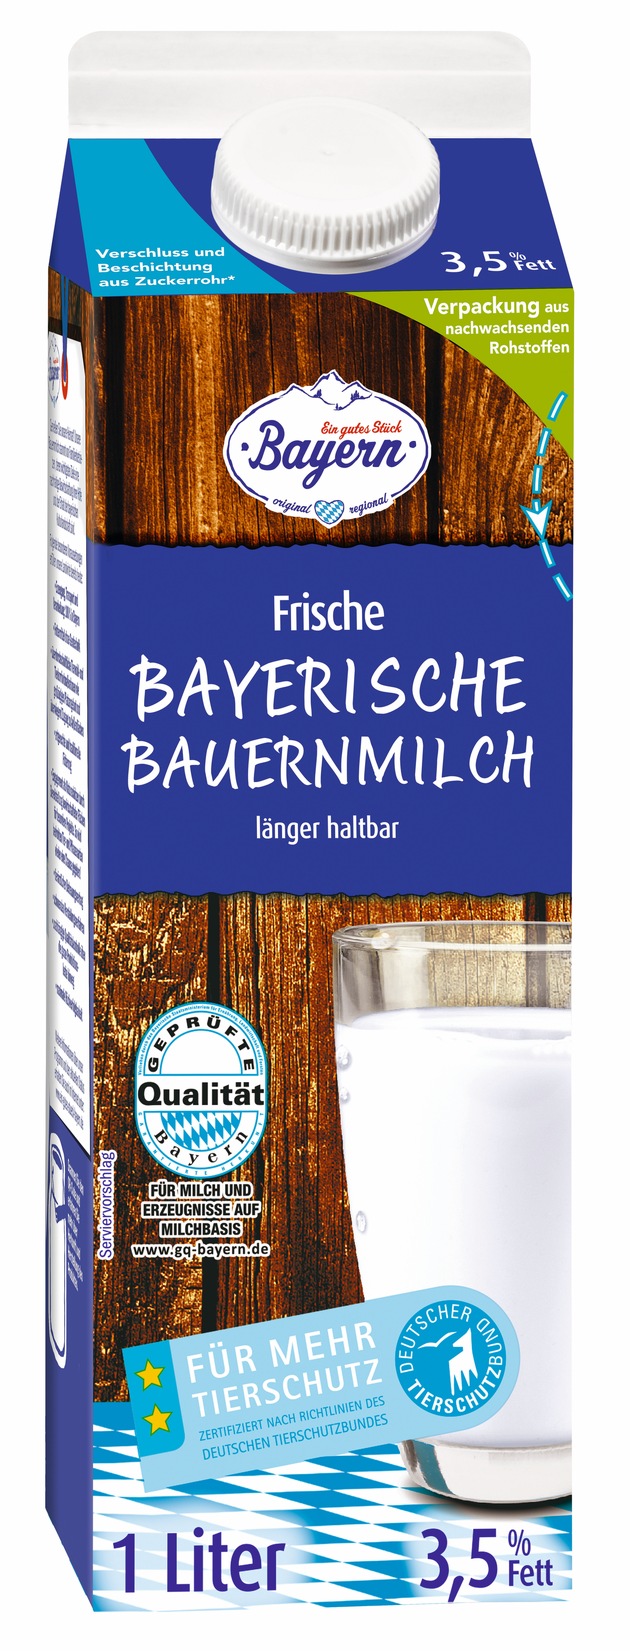 Lidl Deutschland führt als erster Händler die Premiumstufe des Tierschutzlabels &quot;Für Mehr Tierschutz&quot; für Frischmilch in Bayern ein